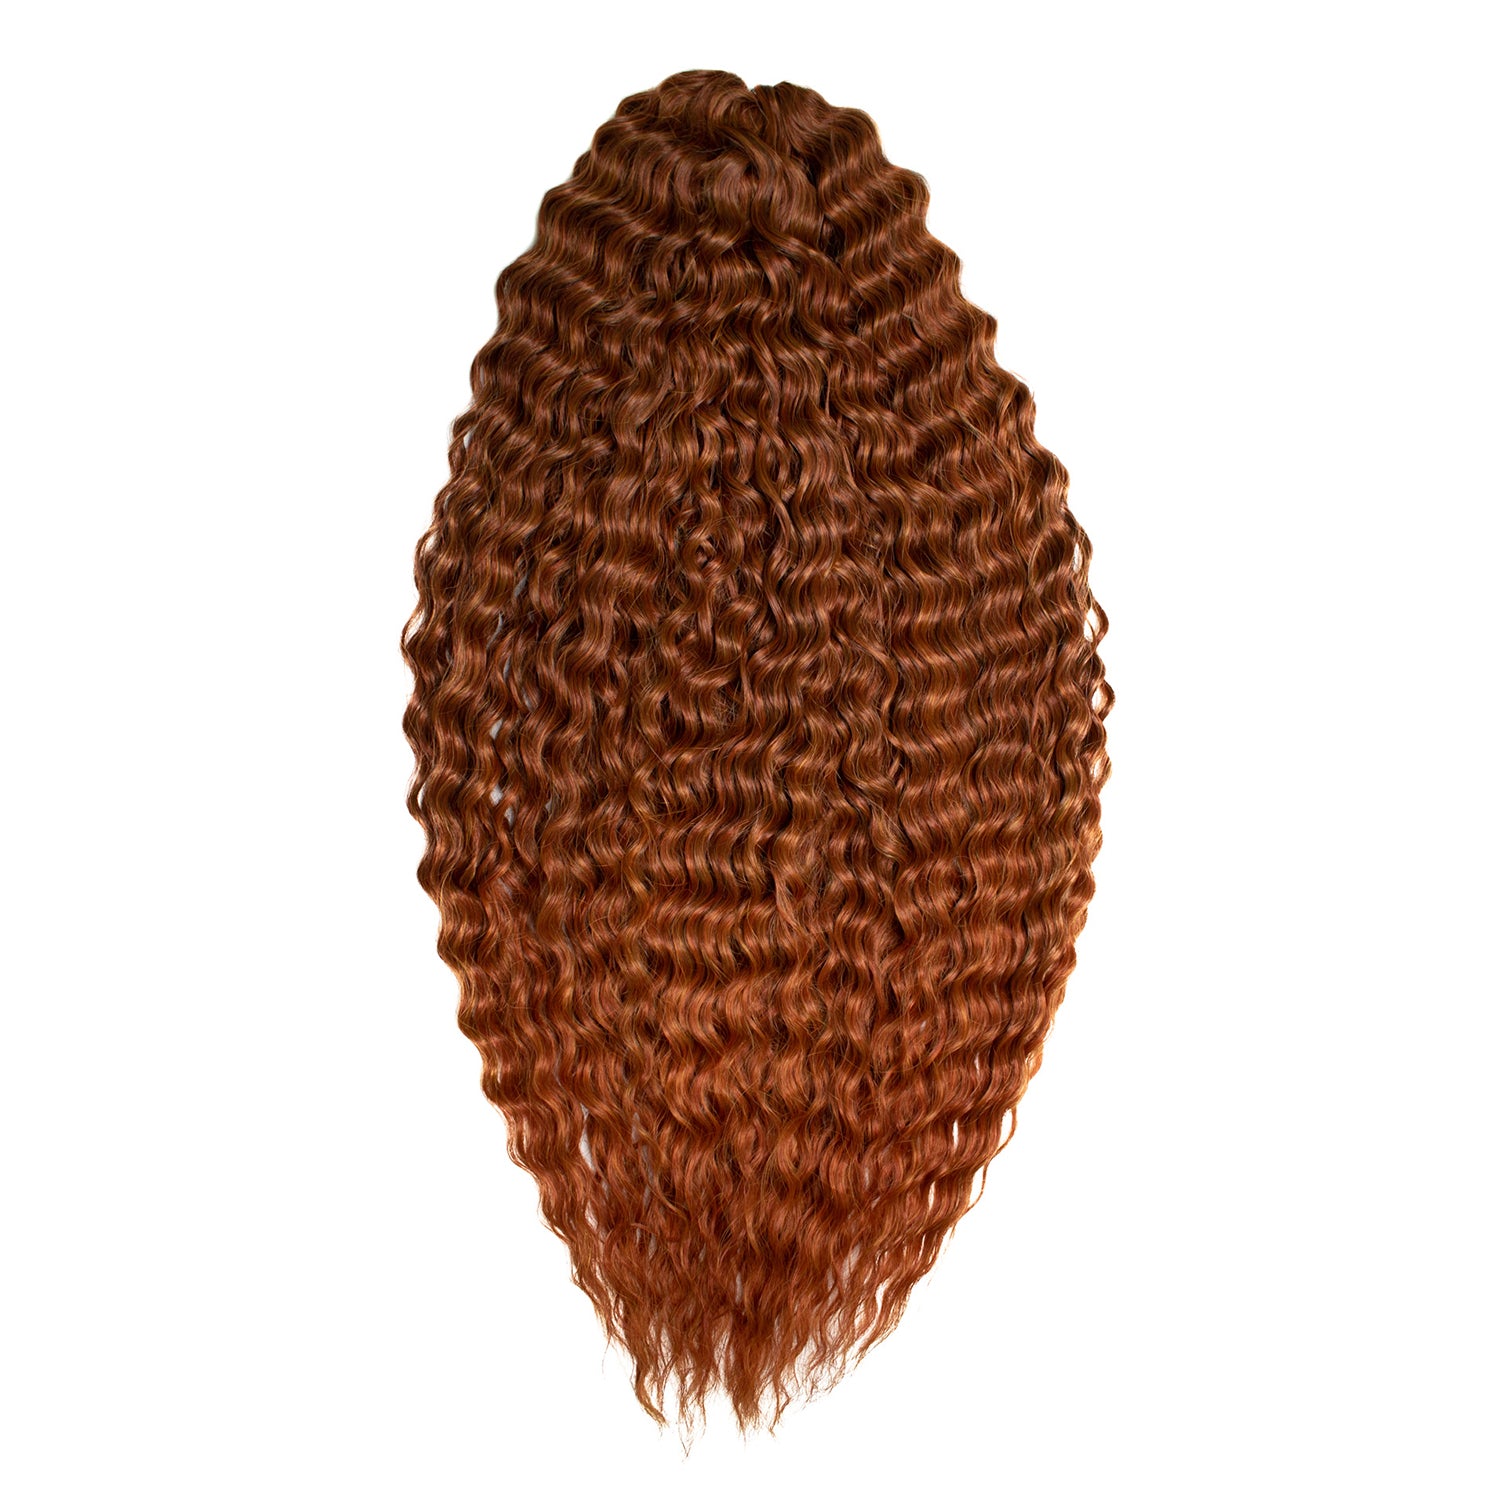 Афрокудри для плетения волос Ariel цвет T433 27 светлый каштан 55см вес 300г резиночки для плетения браслетов rainbow loom персидская коллекция искристый каштан